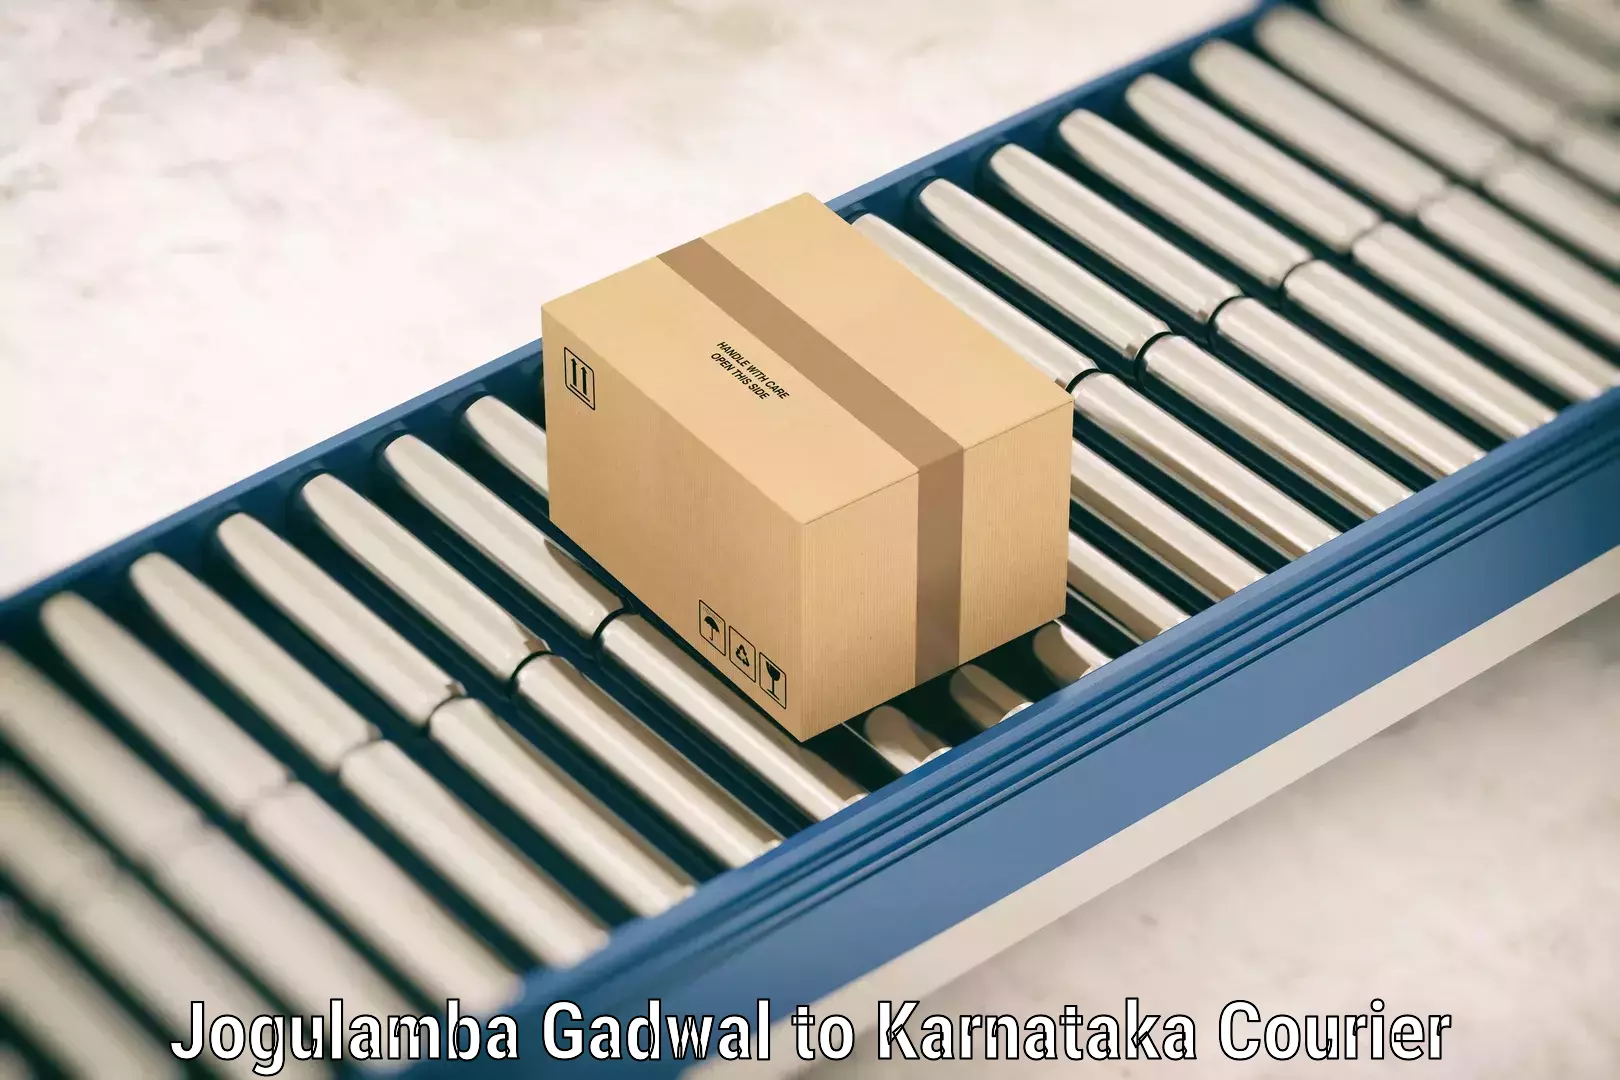 Luggage delivery operations Jogulamba Gadwal to Karnataka